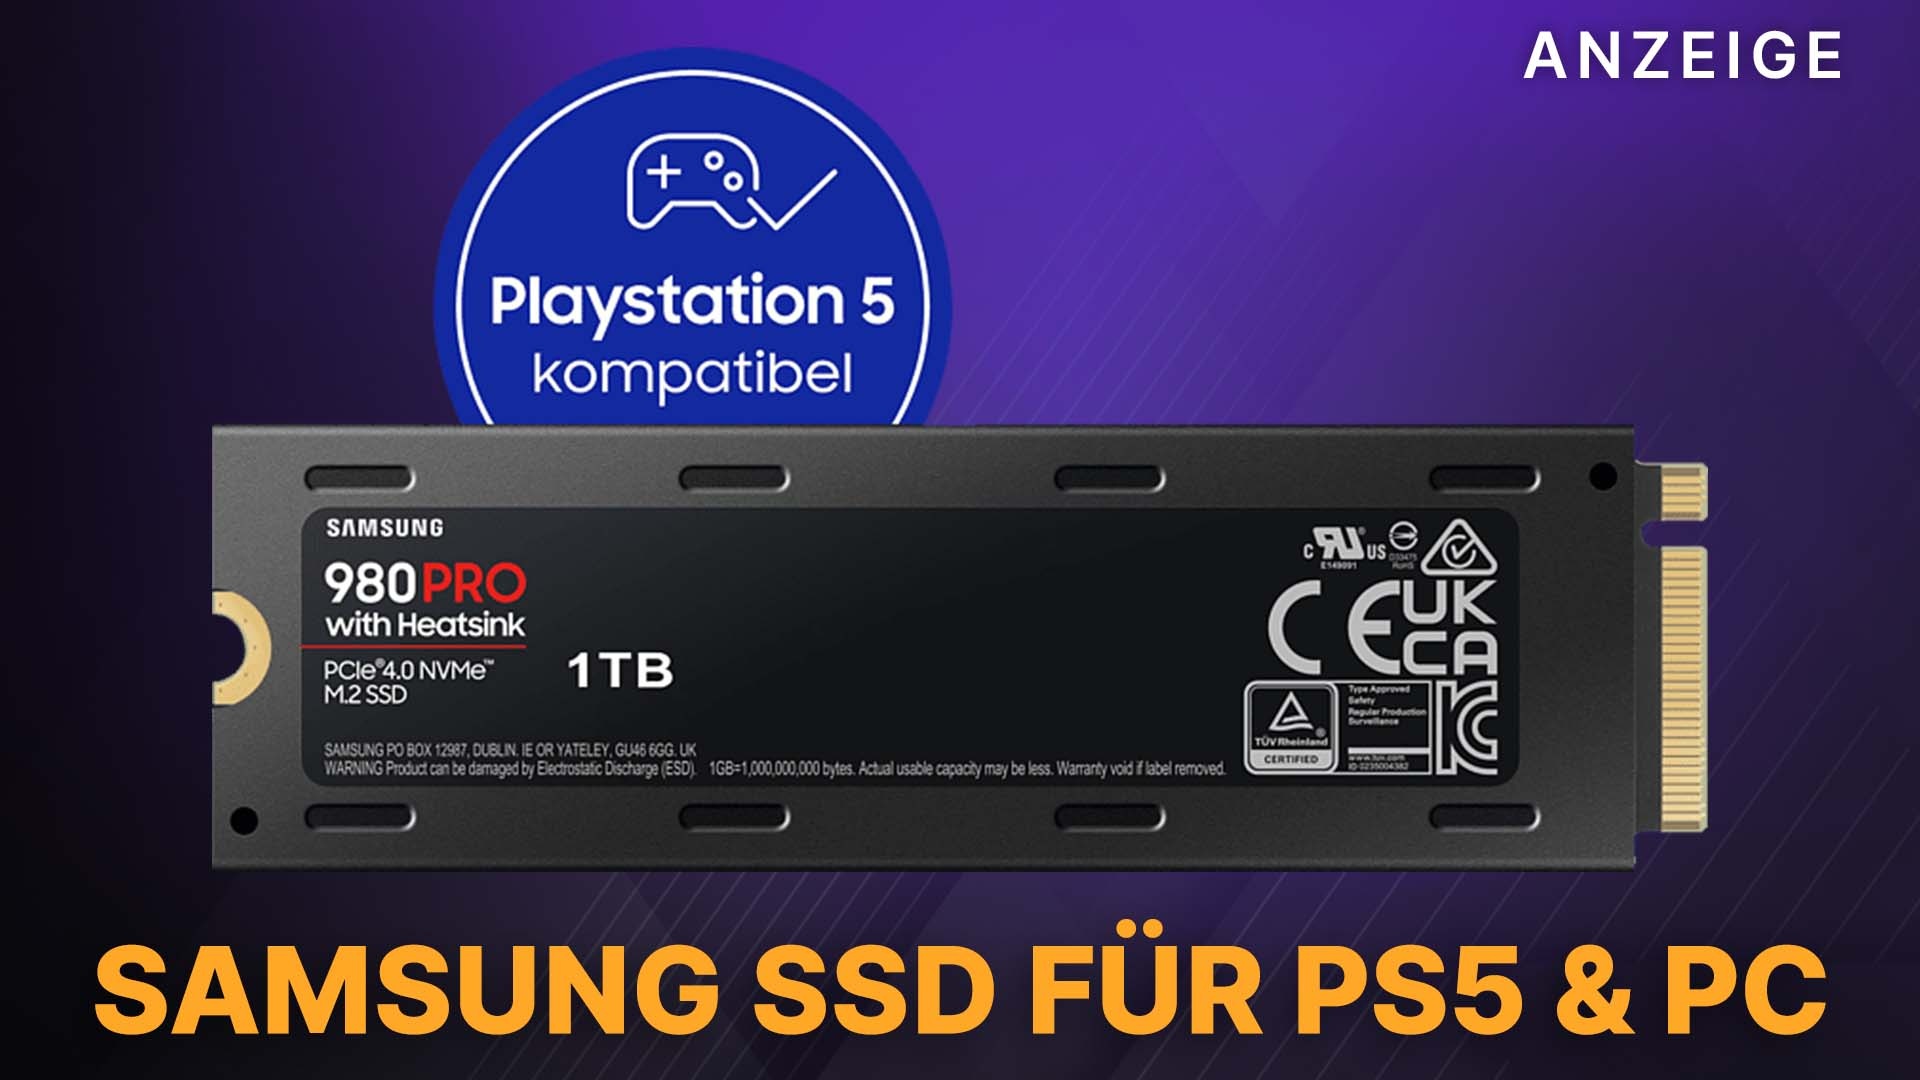 Diese SSD killt Ladezeiten auf Angebot und PS5: der Pro Heatsink im mit Amazon 980 2TB Samsung